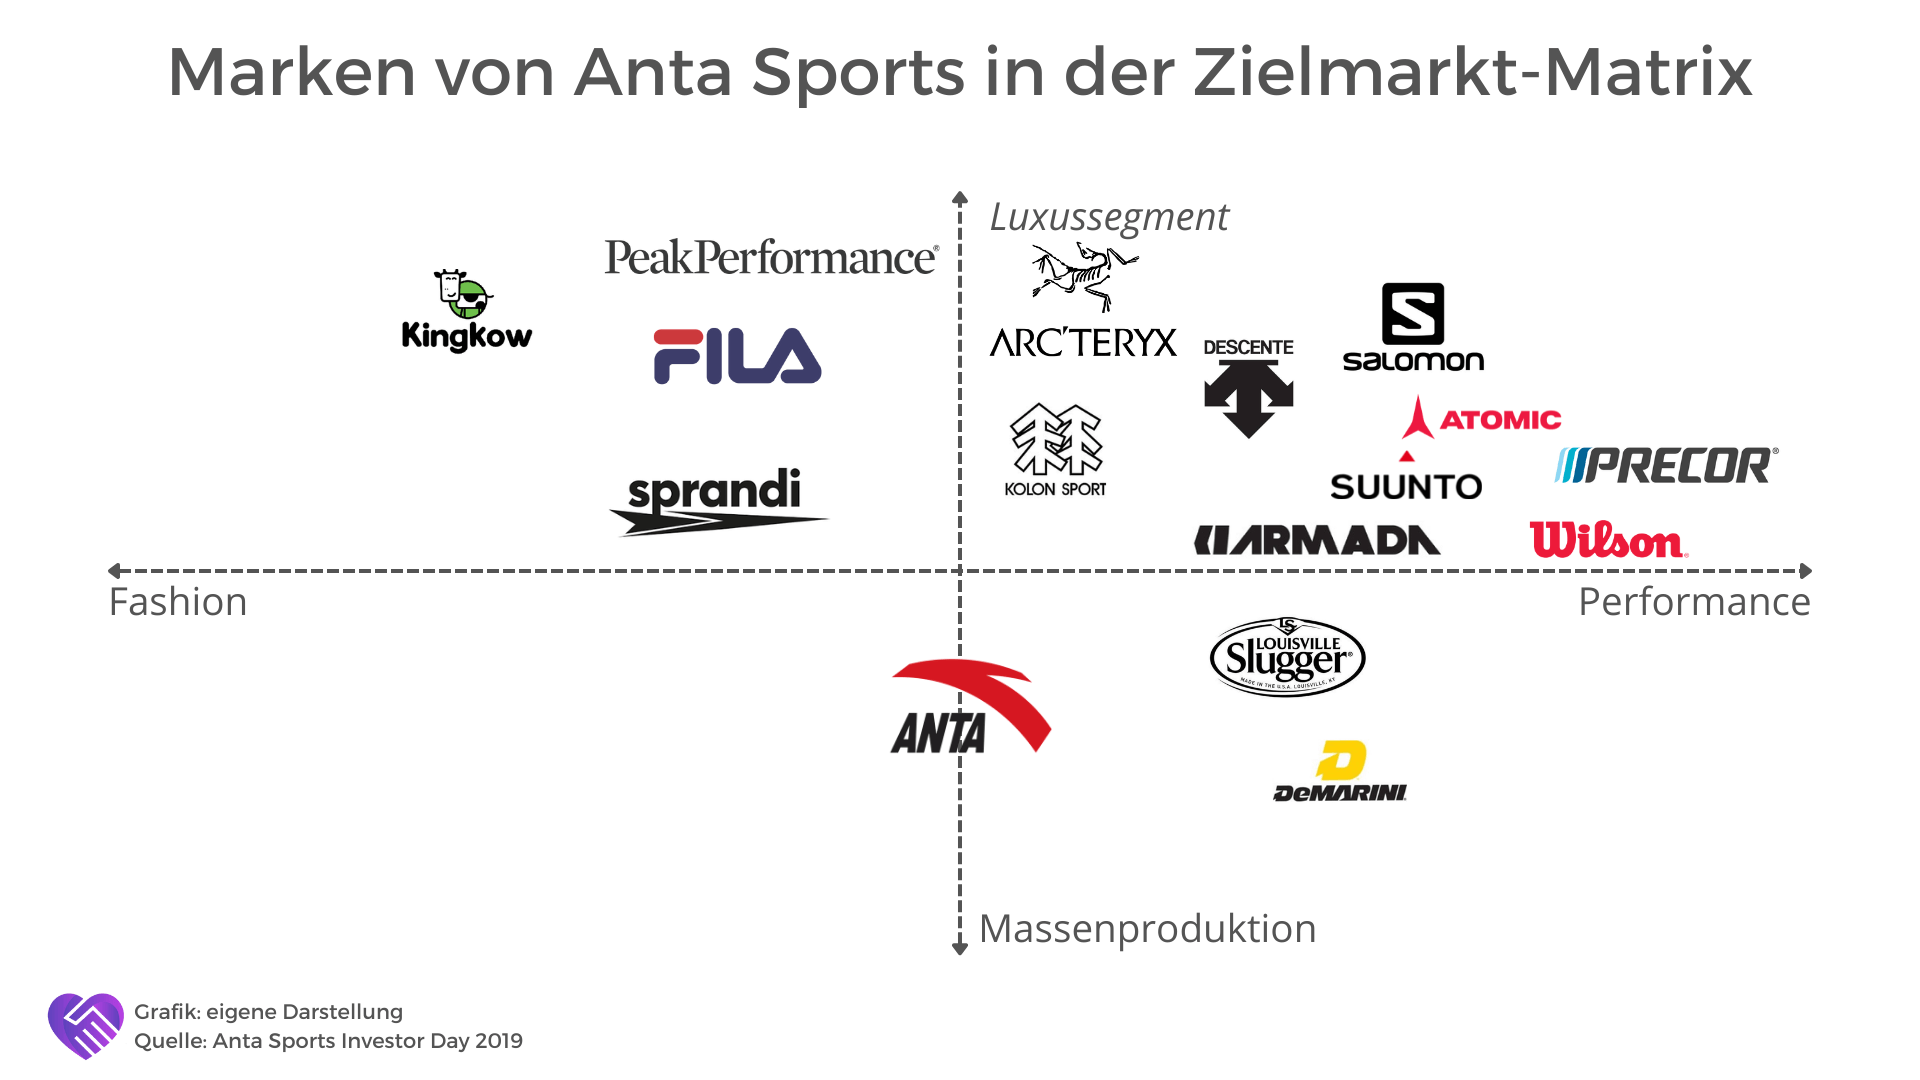 Marken von Anta Sports im Überblick